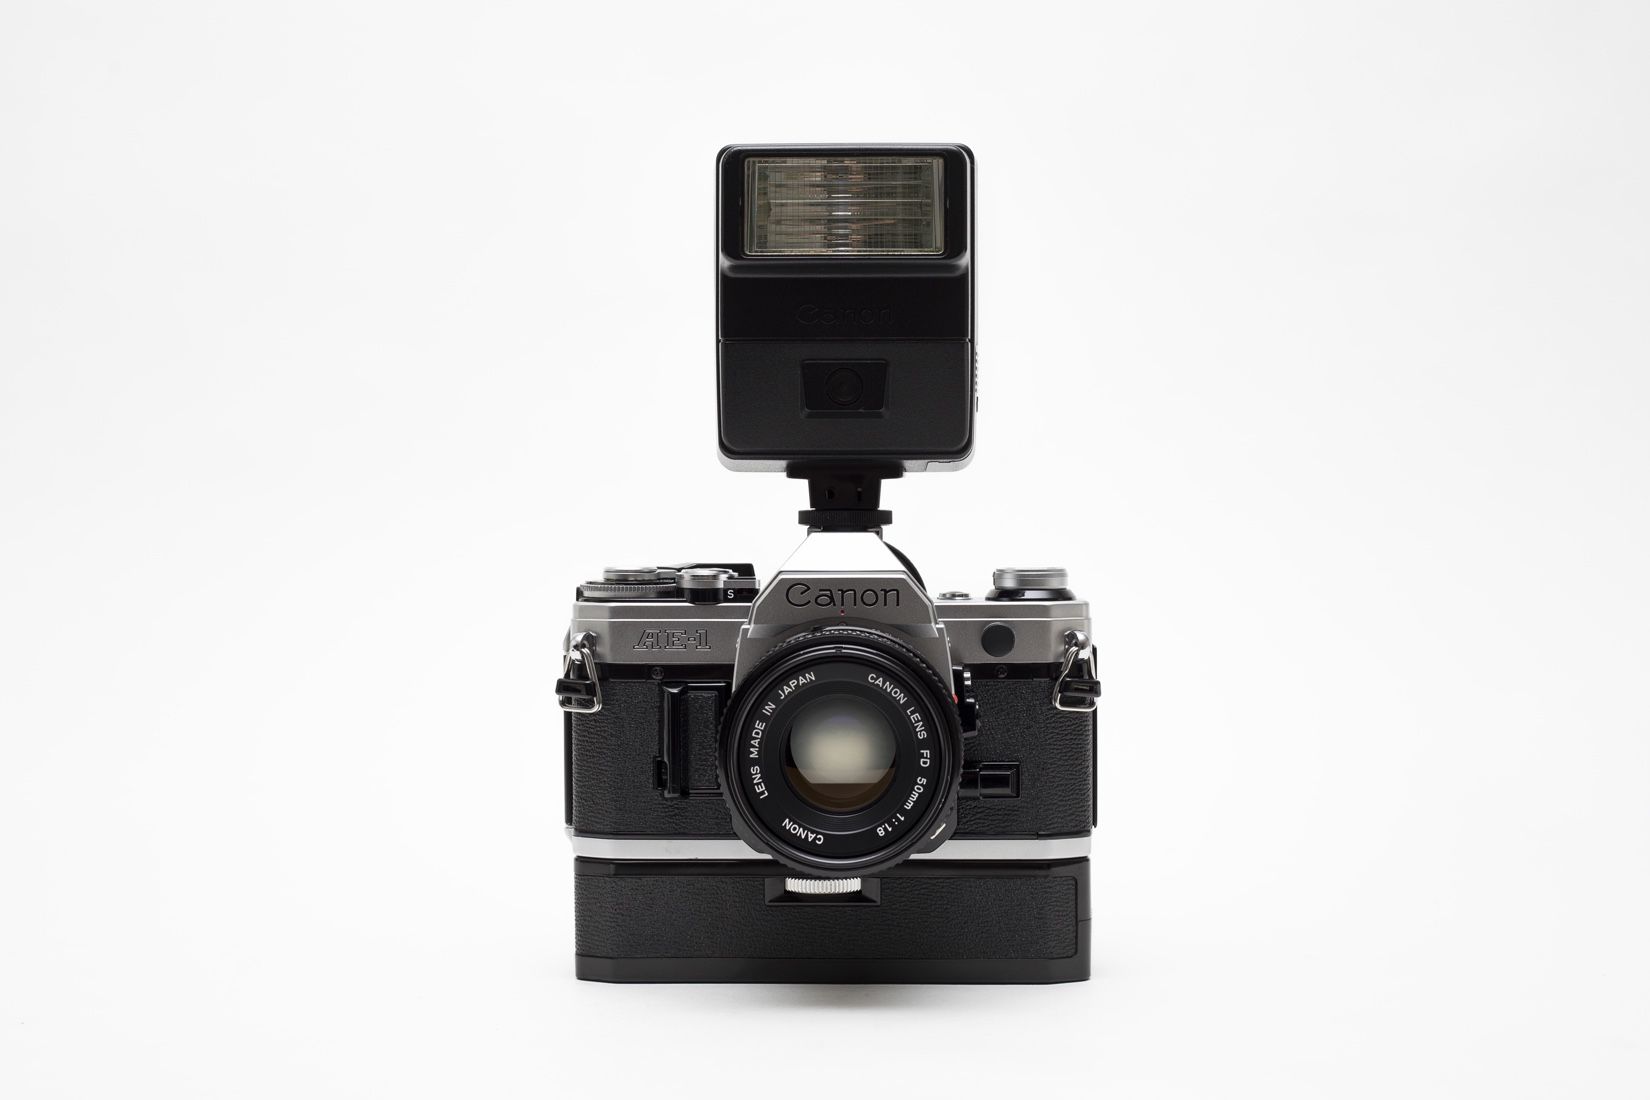 Canon AE-1 35mm Film Camera!